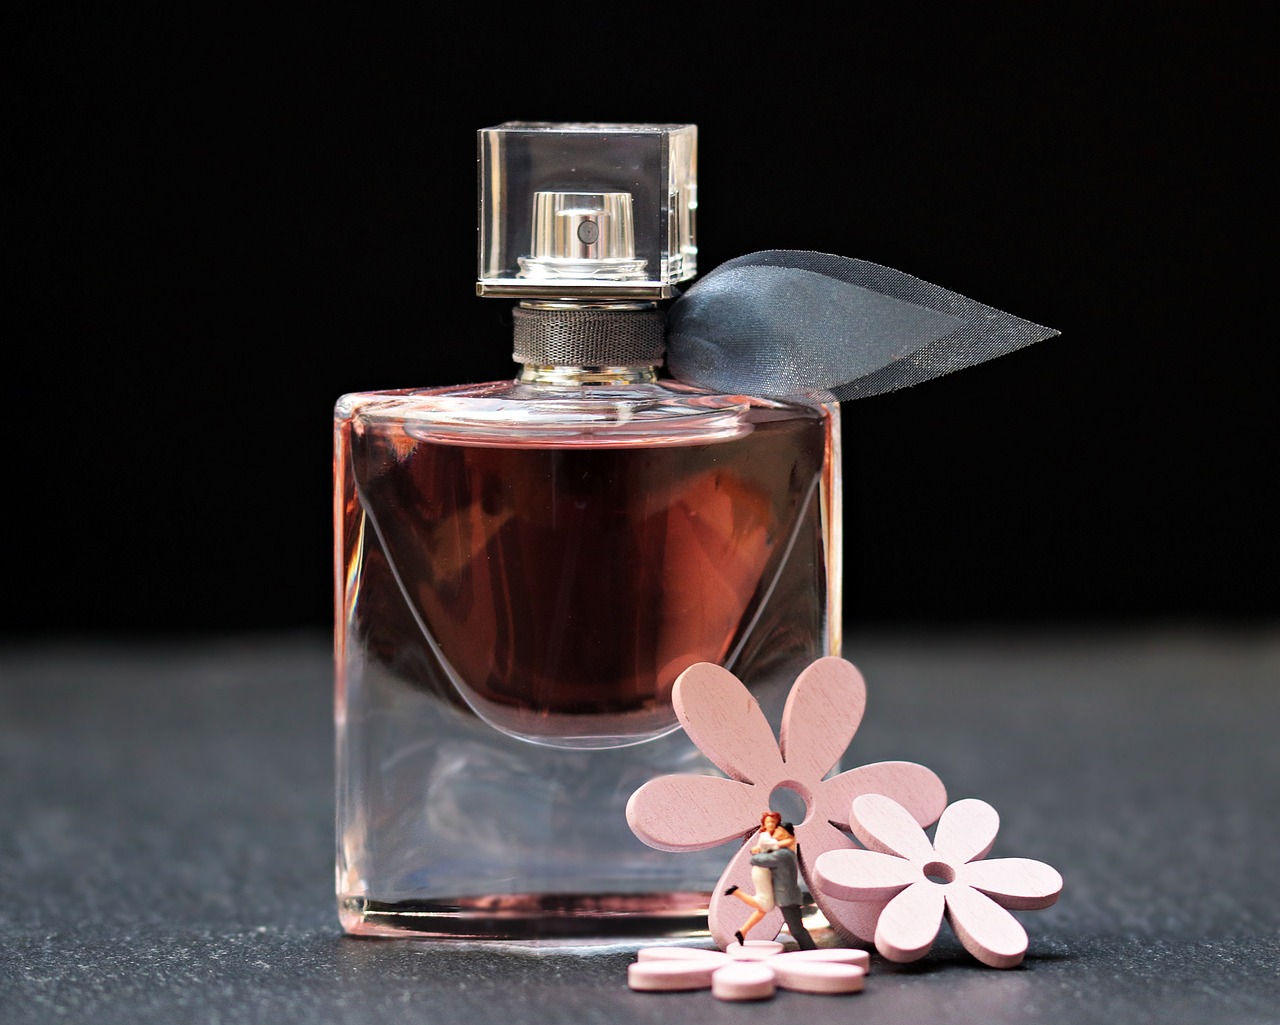 Rekomendasi Parfum Wanita untuk Kamu yang Enerjik dan Aktif, Aroma Buah Ini Buat Kamu Semakin Menyenangkan